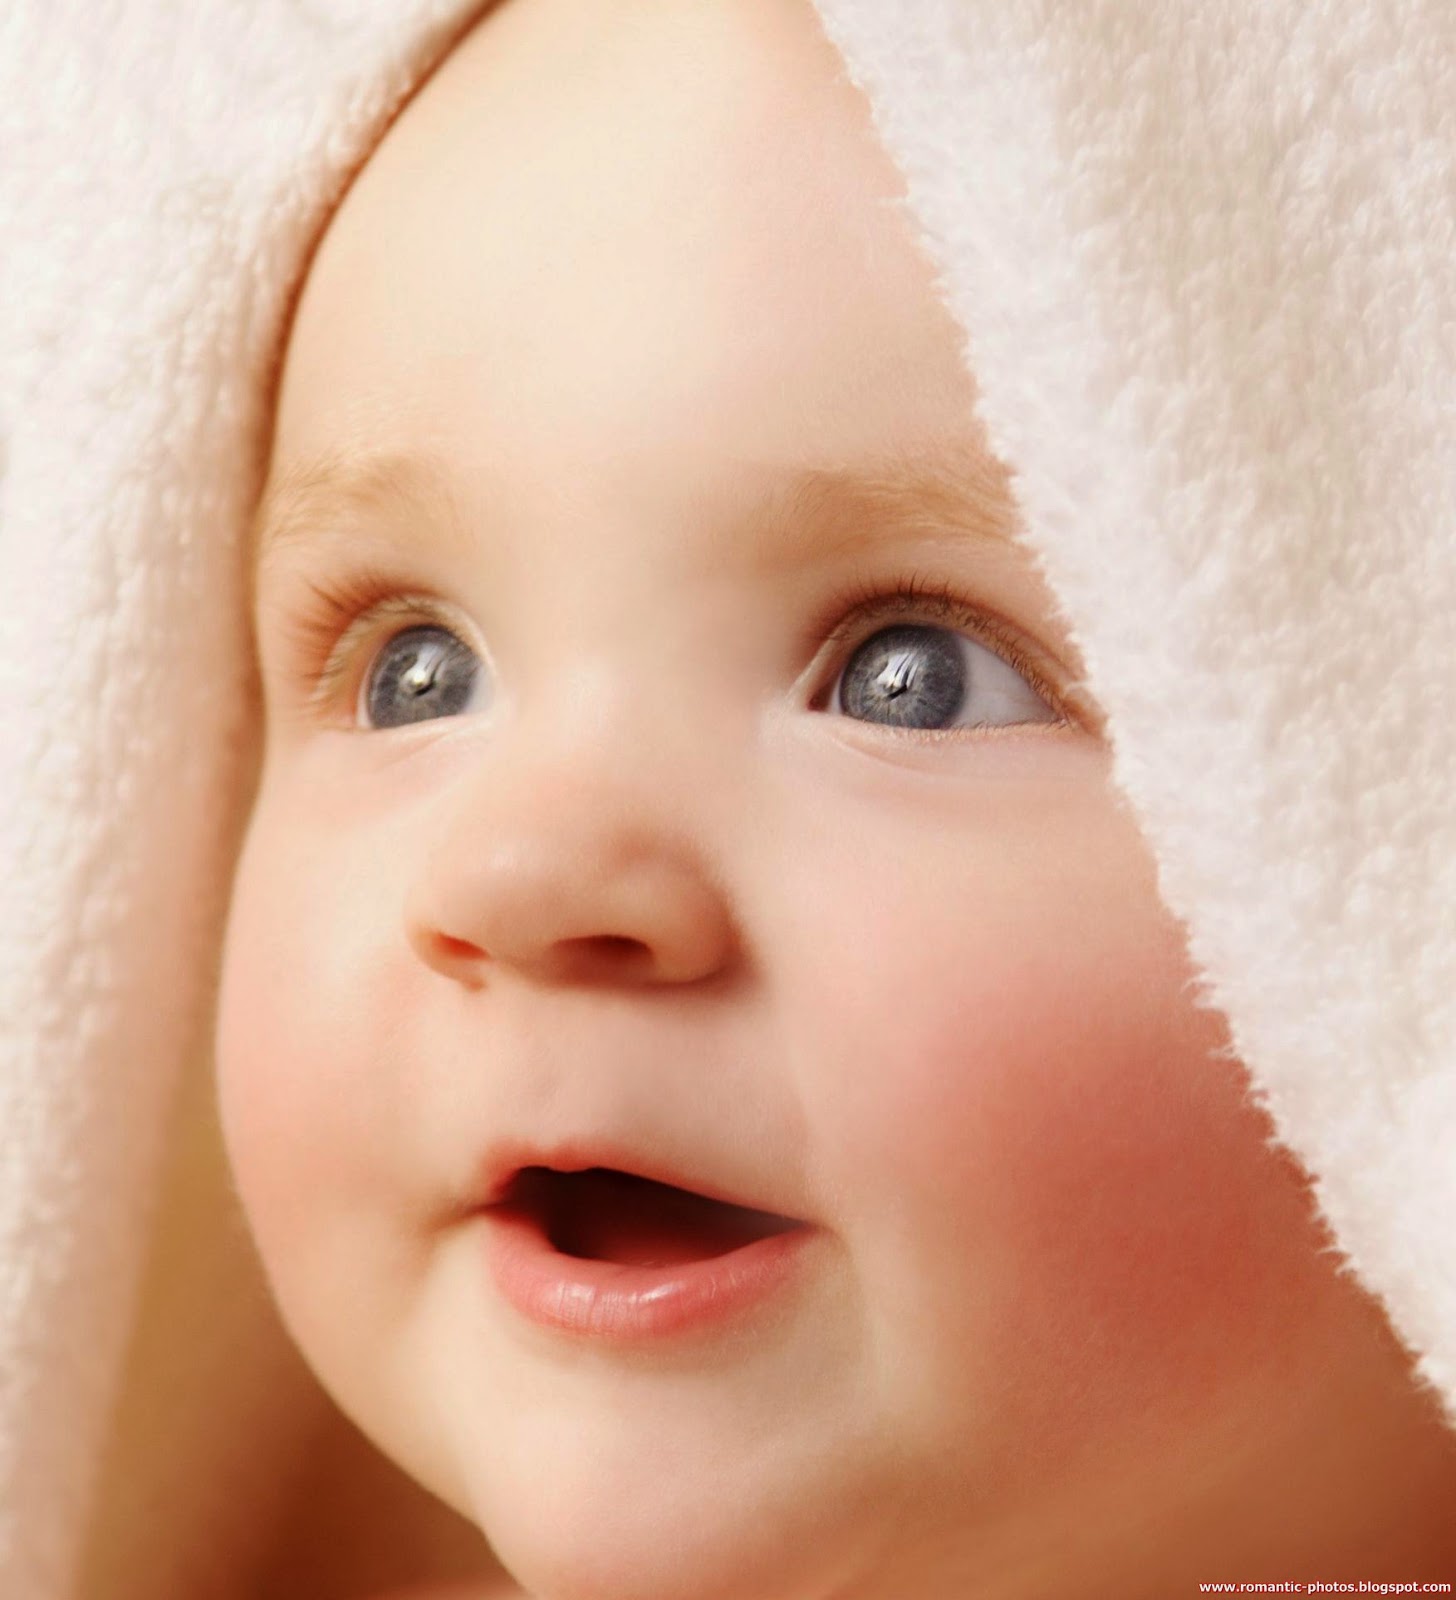 دراسة: التواصل باللمس قد يساعد في نمو أدمغة حديثي الولادة